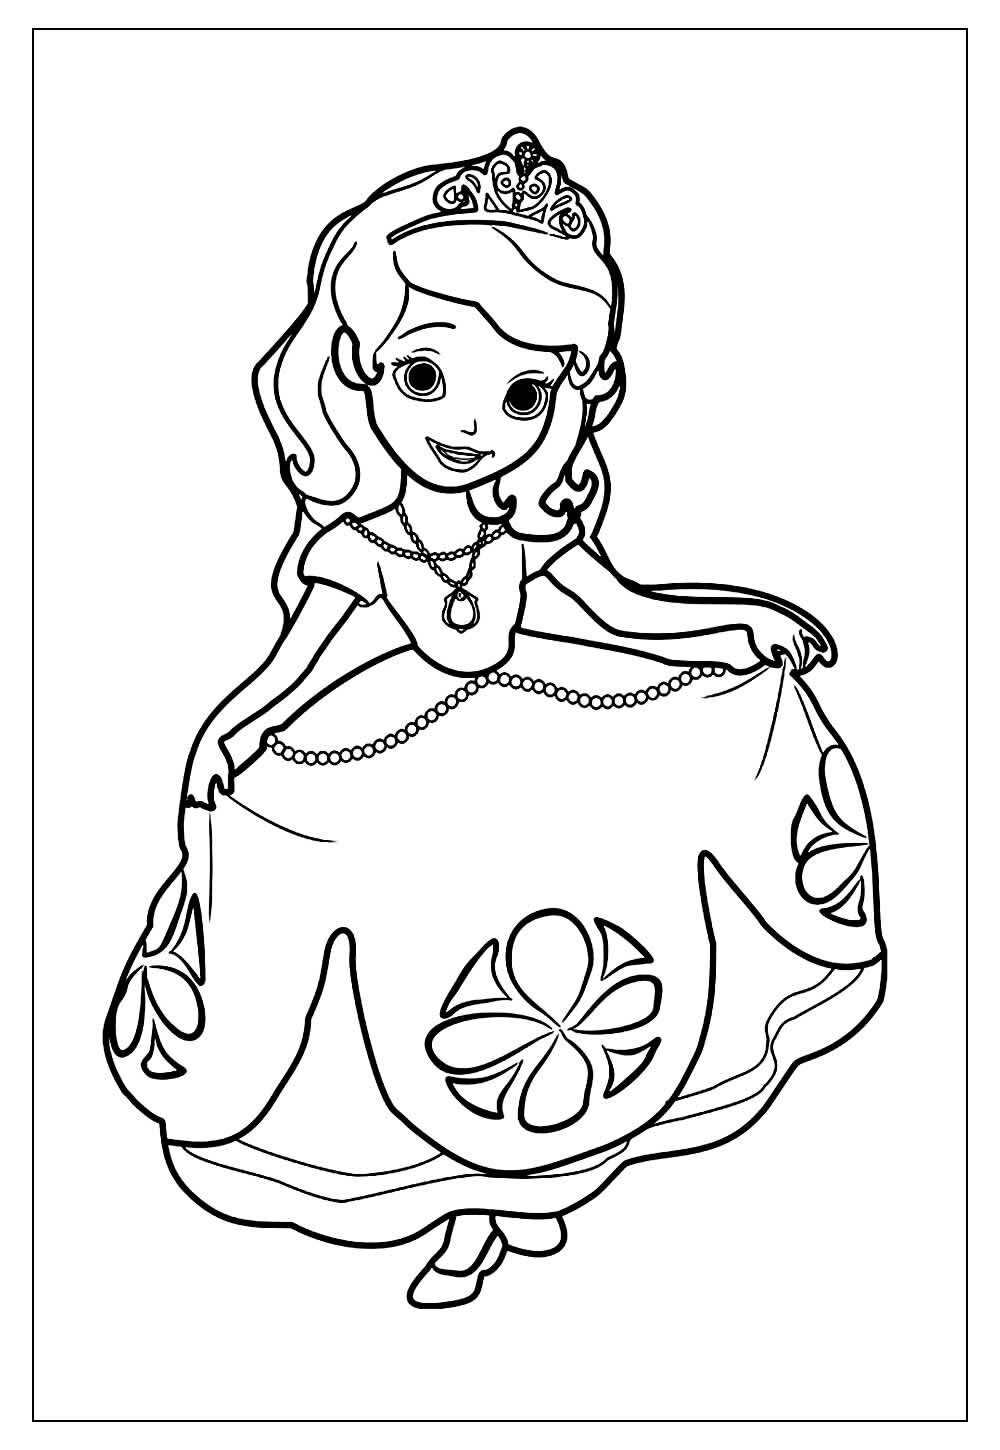 Desenho para colorir da Princesinha Sofia